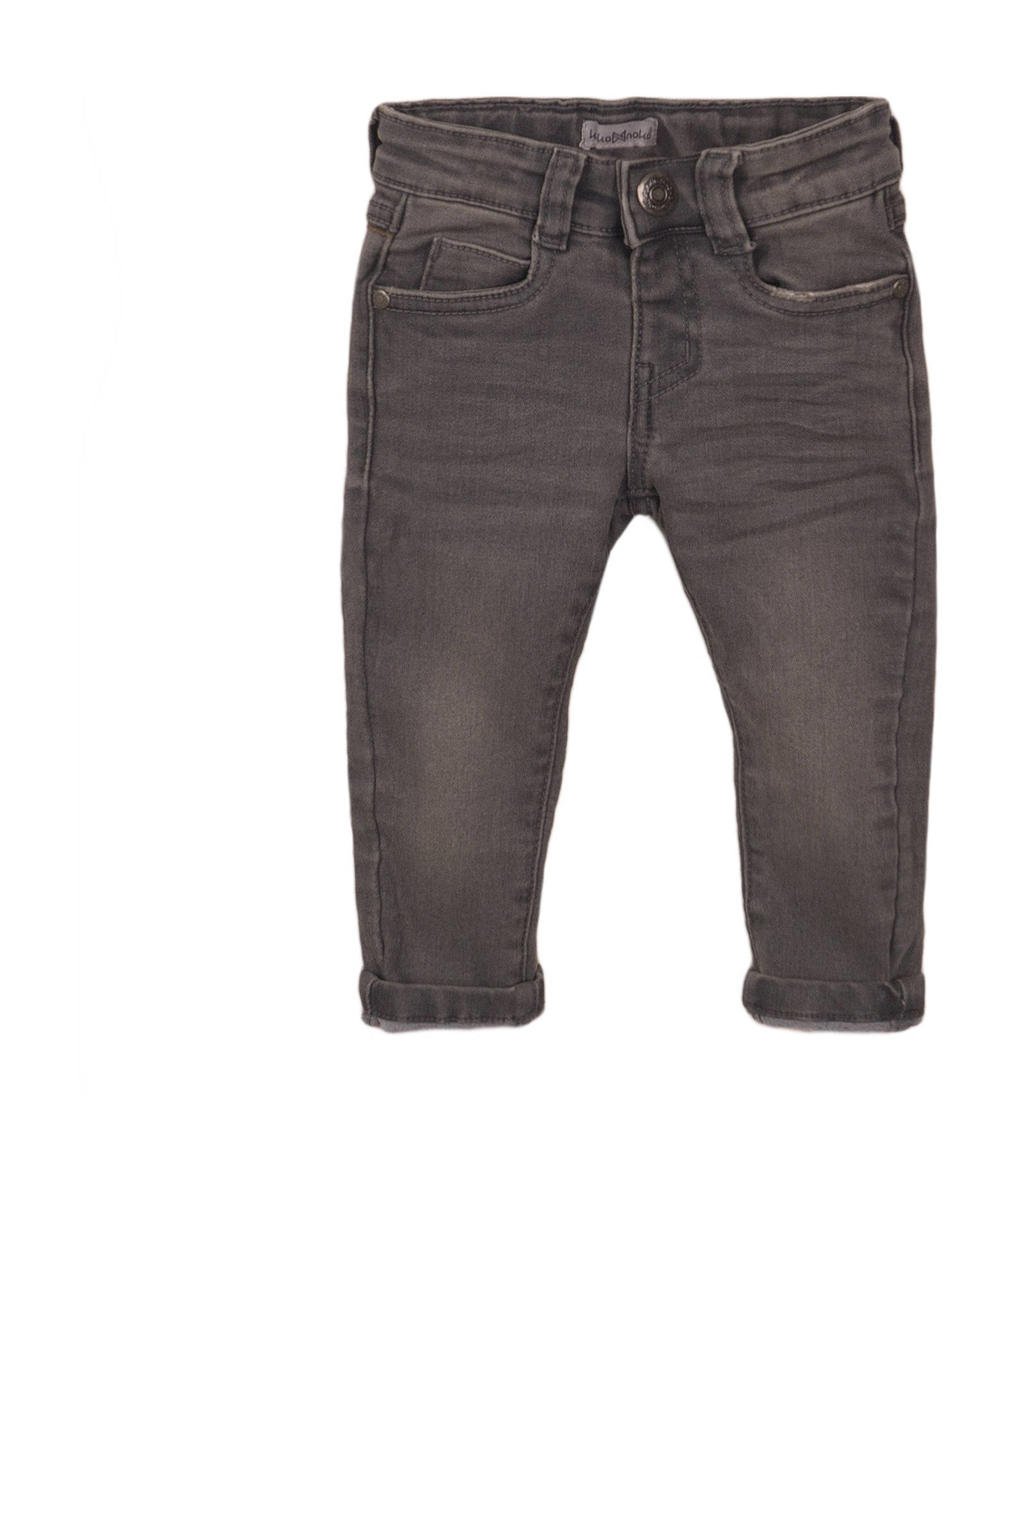 Grijze jongens Koko Noko skinny jeans stonewashed van stretchdenim 